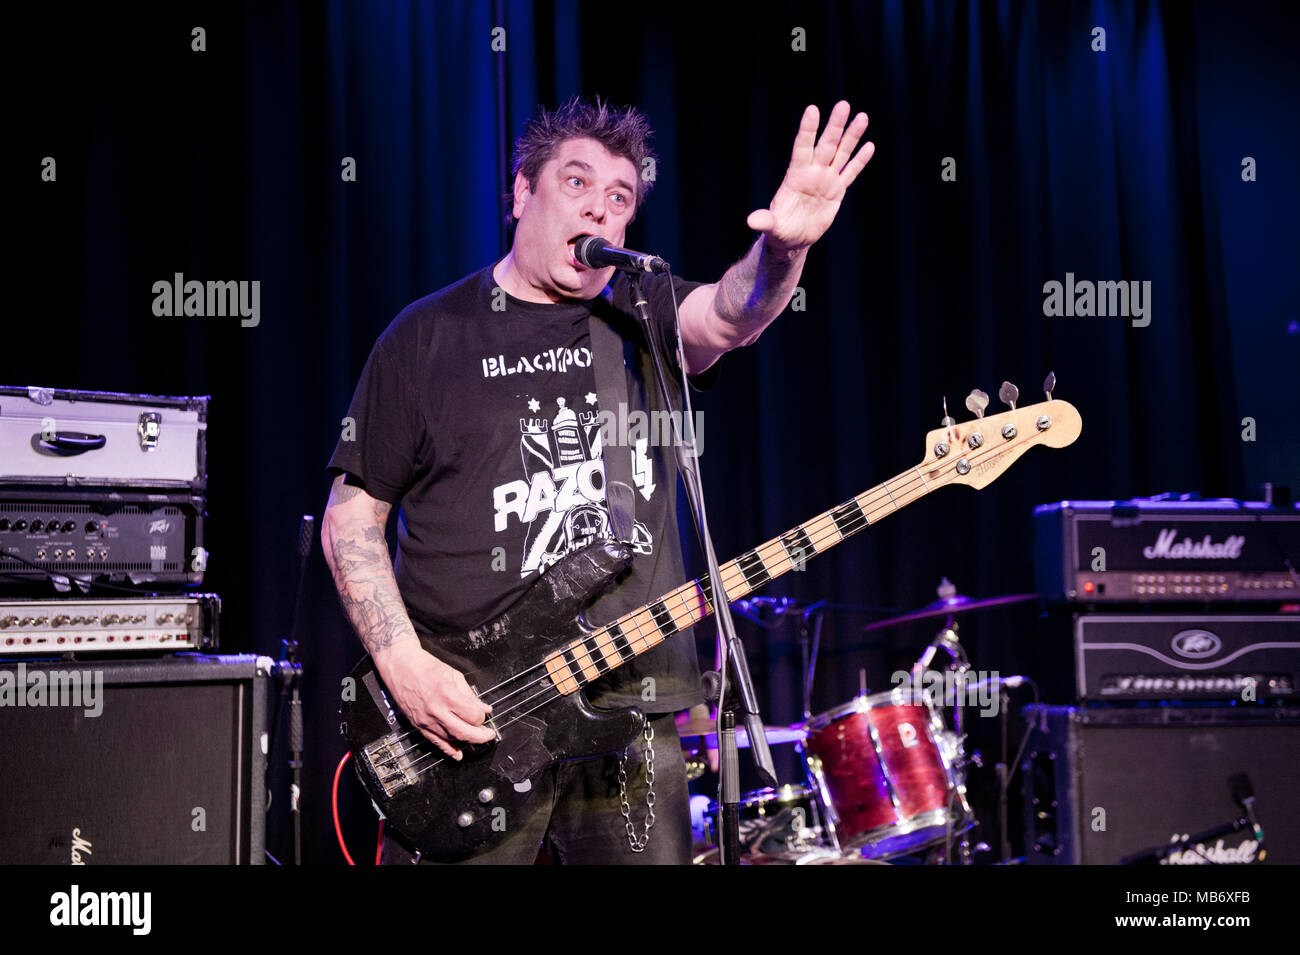 Le groupe de punk rock originaire de Lurkers en concert à la Continental, Preston, Lancashire, Royaume-Uni. Arturo Bassick Chanteur et bassiste. Banque D'Images